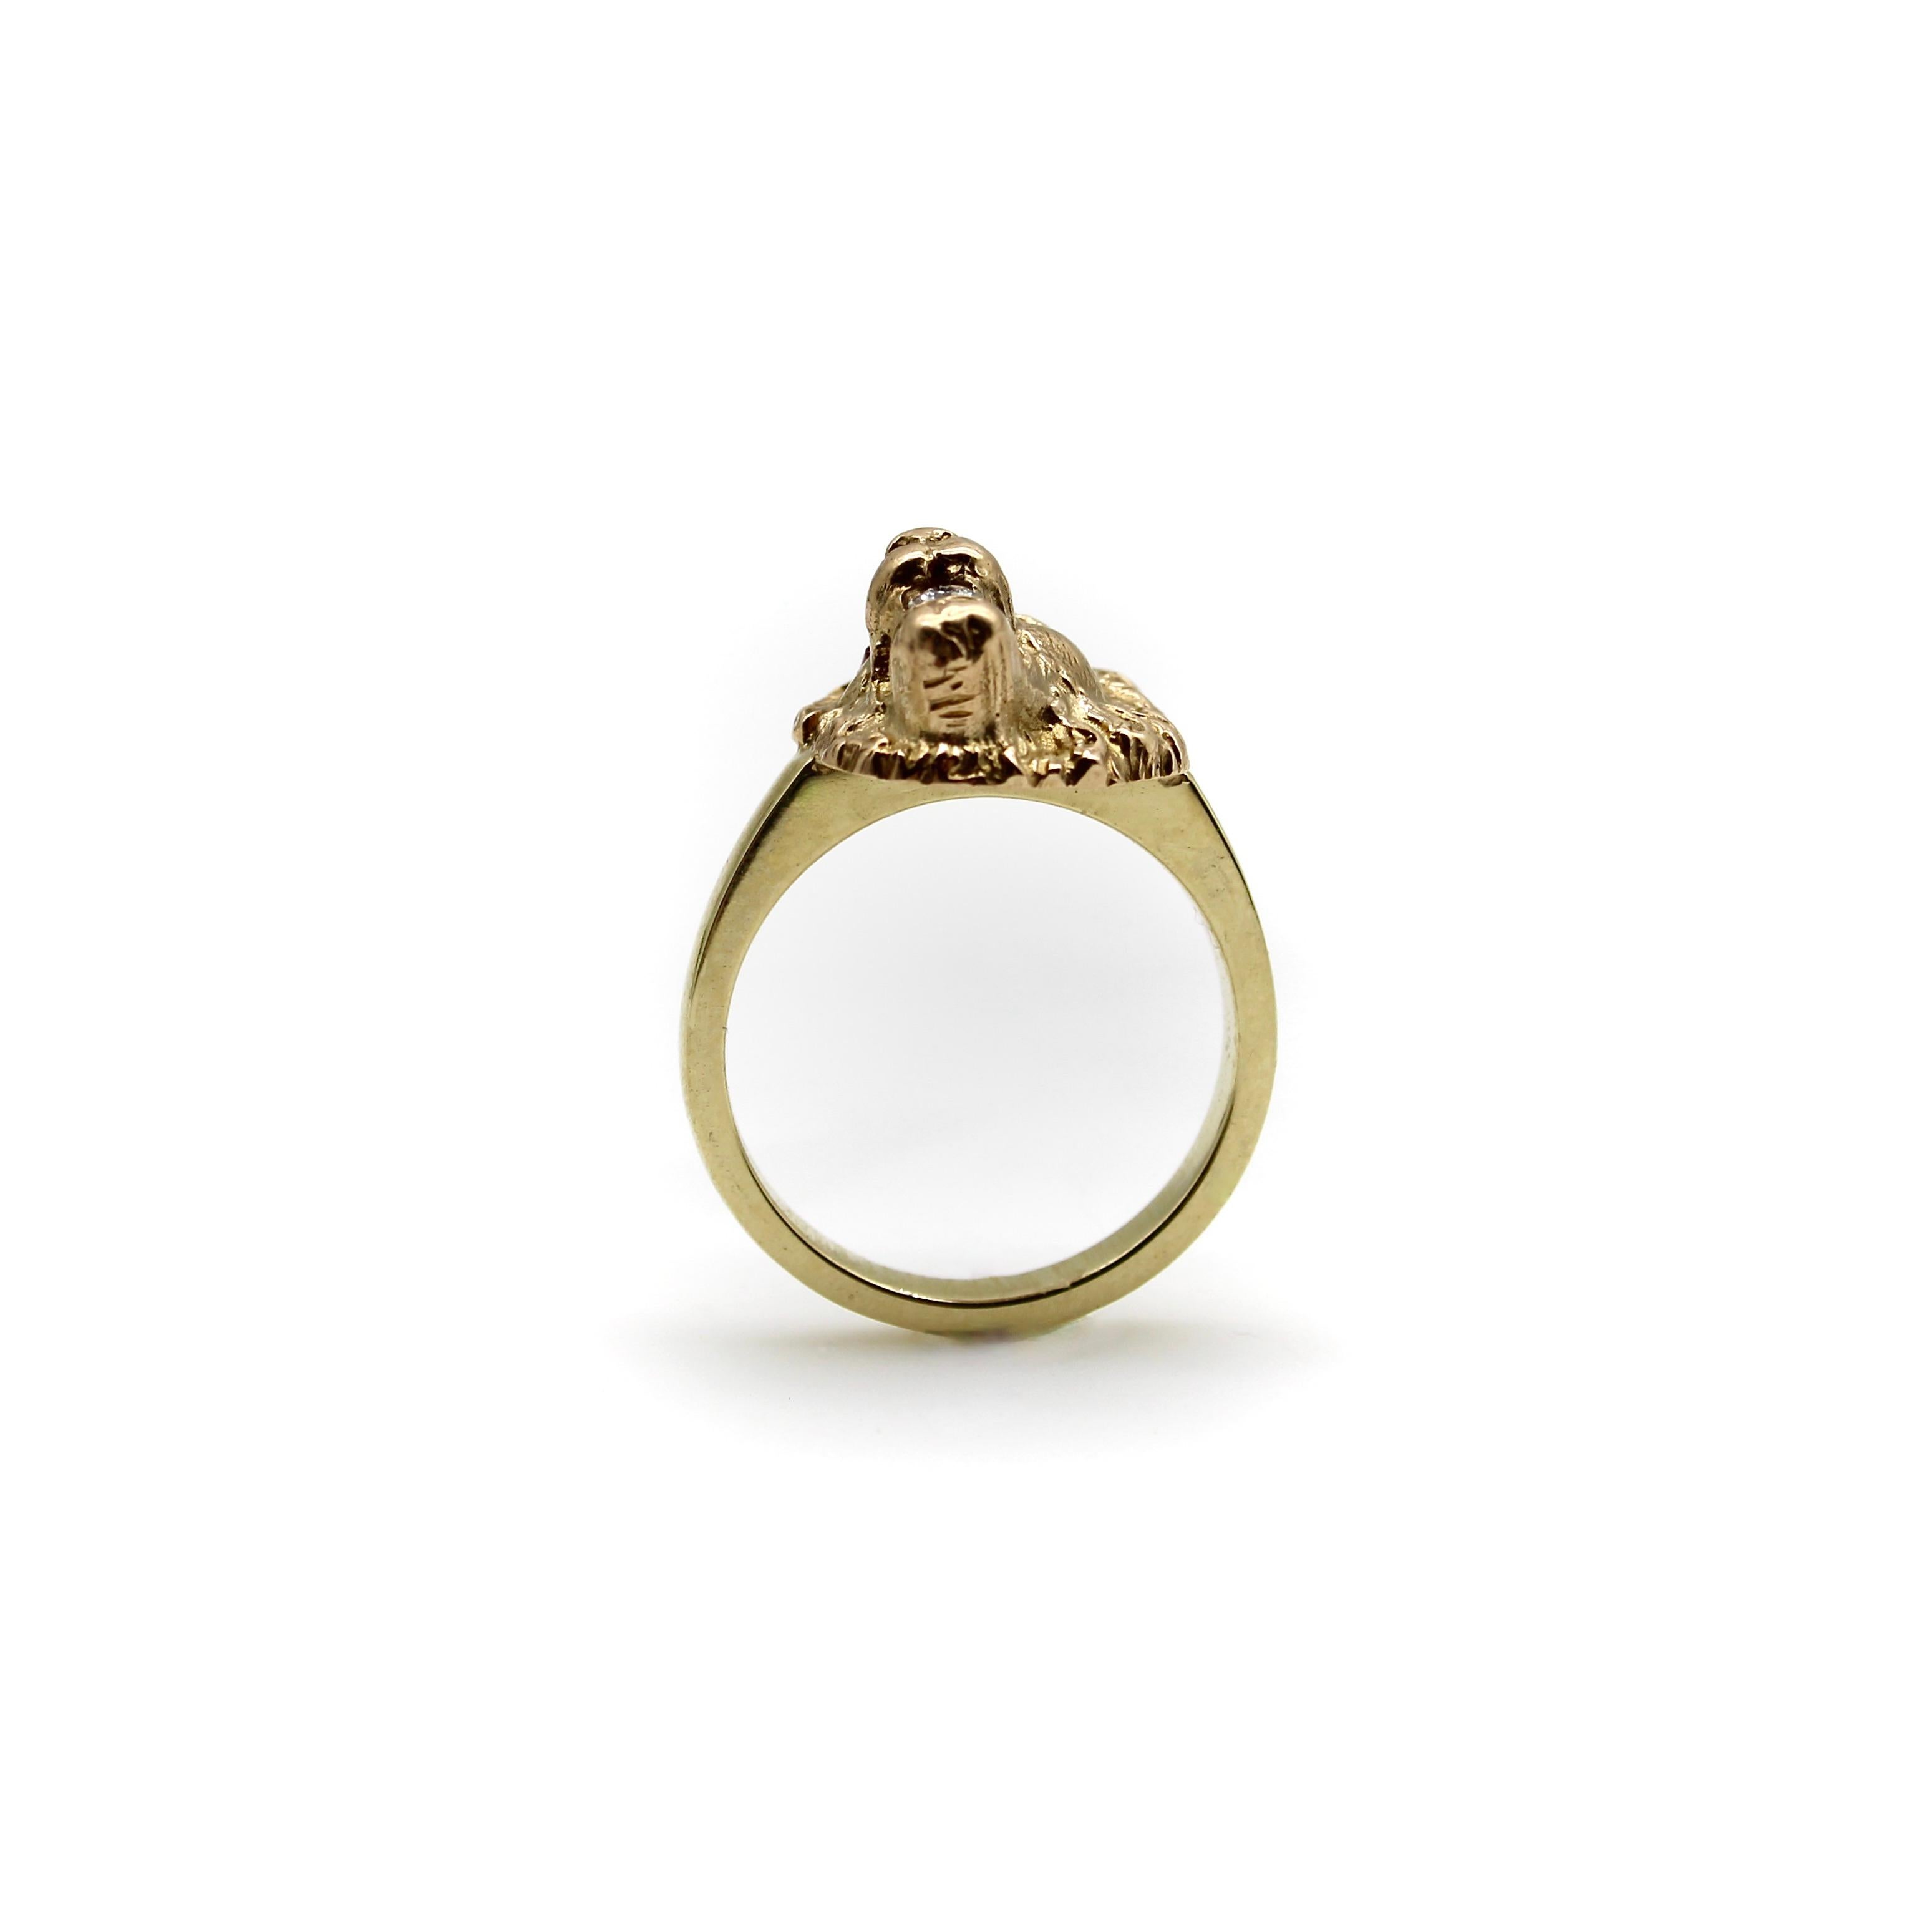 Dieser Löwenkopf aus 14-karätigem Gold wurde aus einer Anstecknadel aus der viktorianischen Ära umgewandelt und auf ein individuelles Ringband montiert. Das Profil des Löwen befindet sich in der Dreiviertelansicht. Sie ist in einem unglaublichen